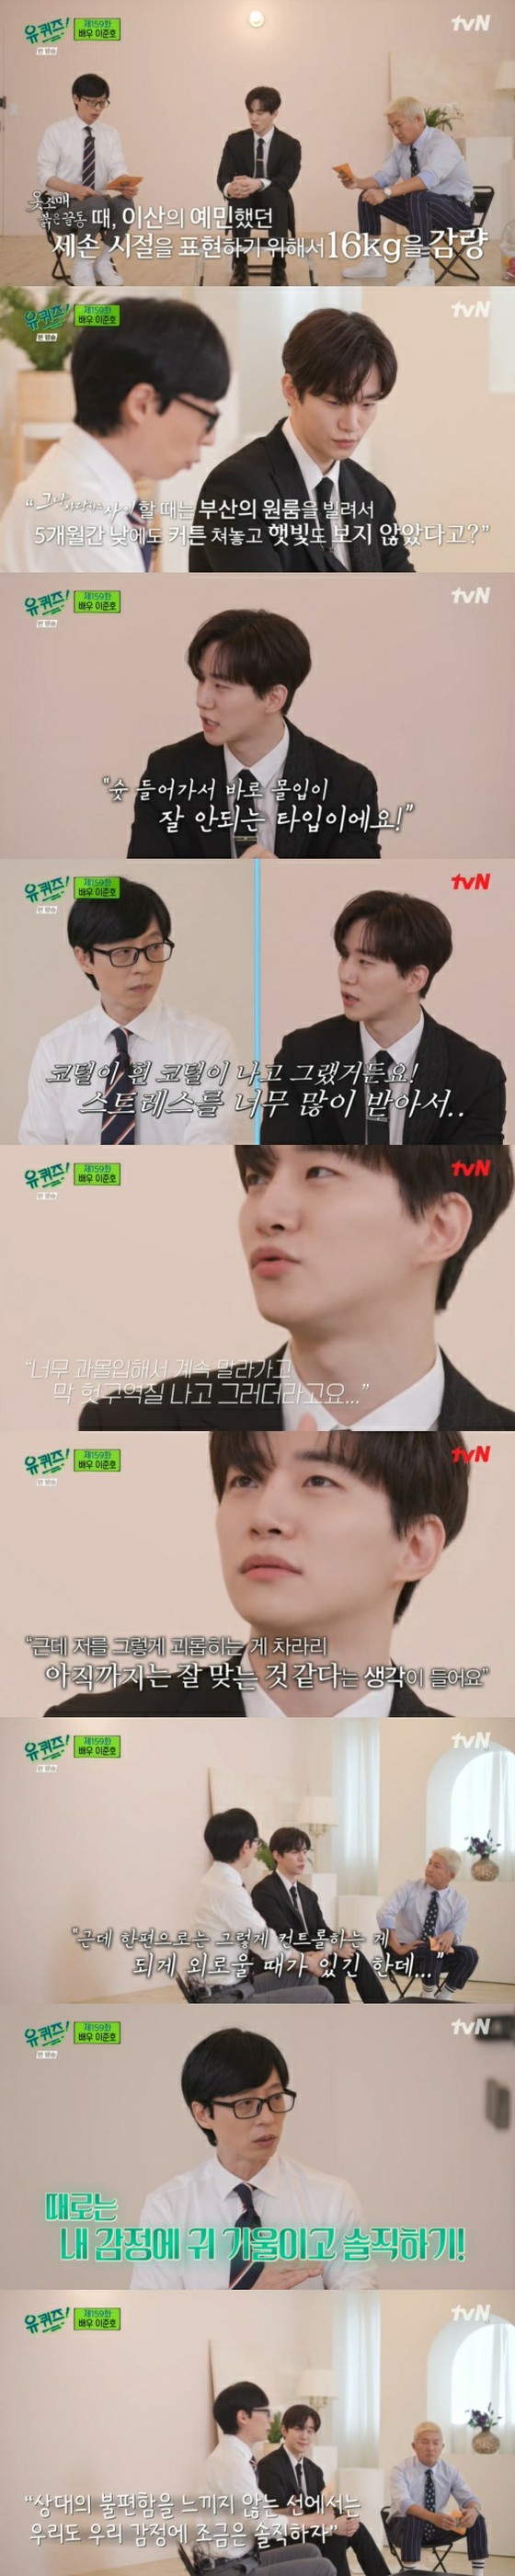 Vào vai khiến JUNHO (2PM) đau khổ ... Lời khuyên chân thành của Yoo Jae-suk = "You Quiz ON THE BLOCK"